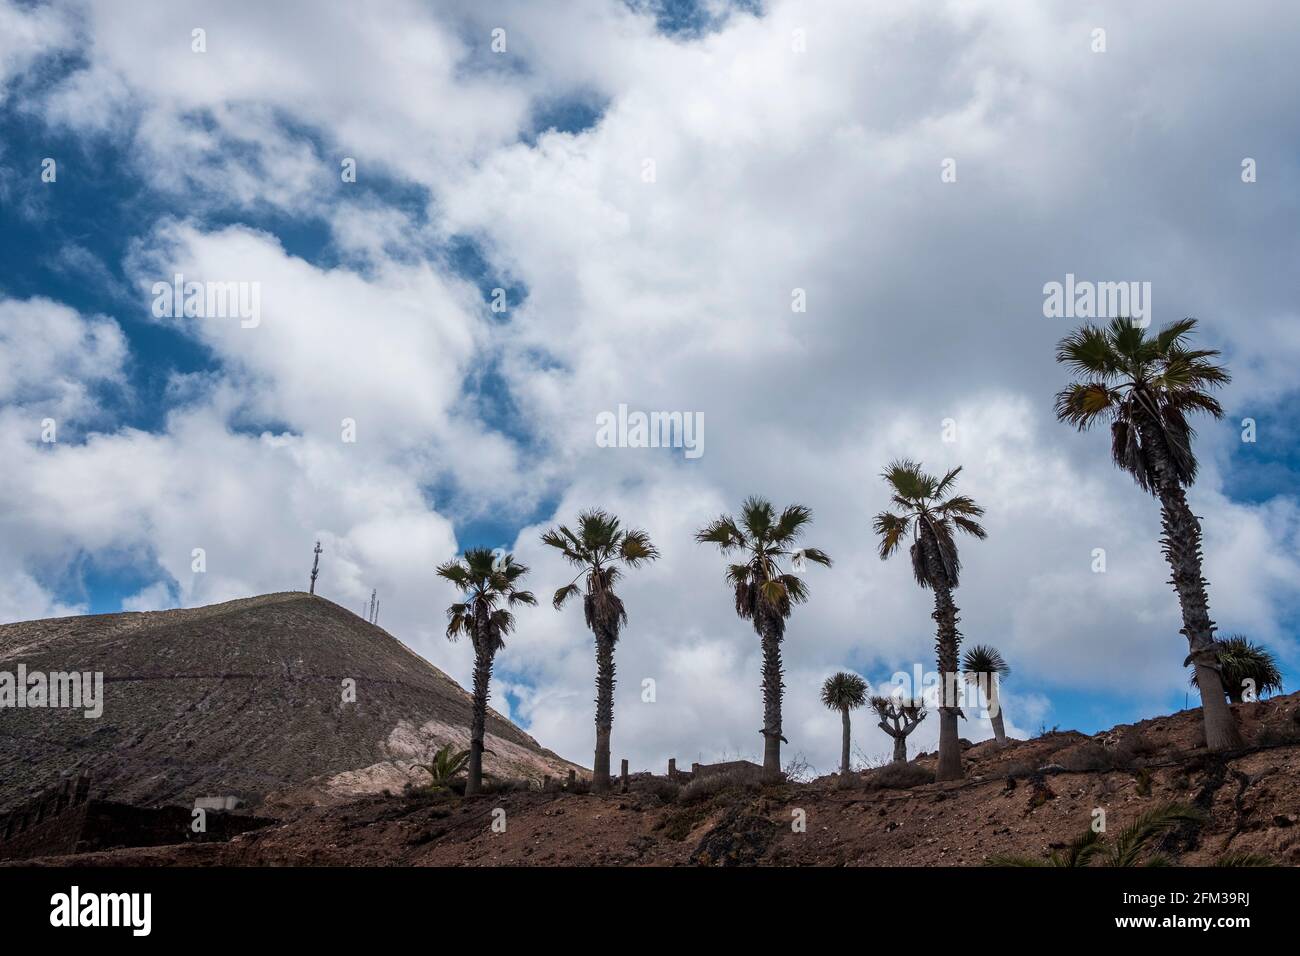 Gran Canaria, eine spanische Kanarische Insel vor der Nordwestküste von Afrika. El Sobradillo. Foto de stock